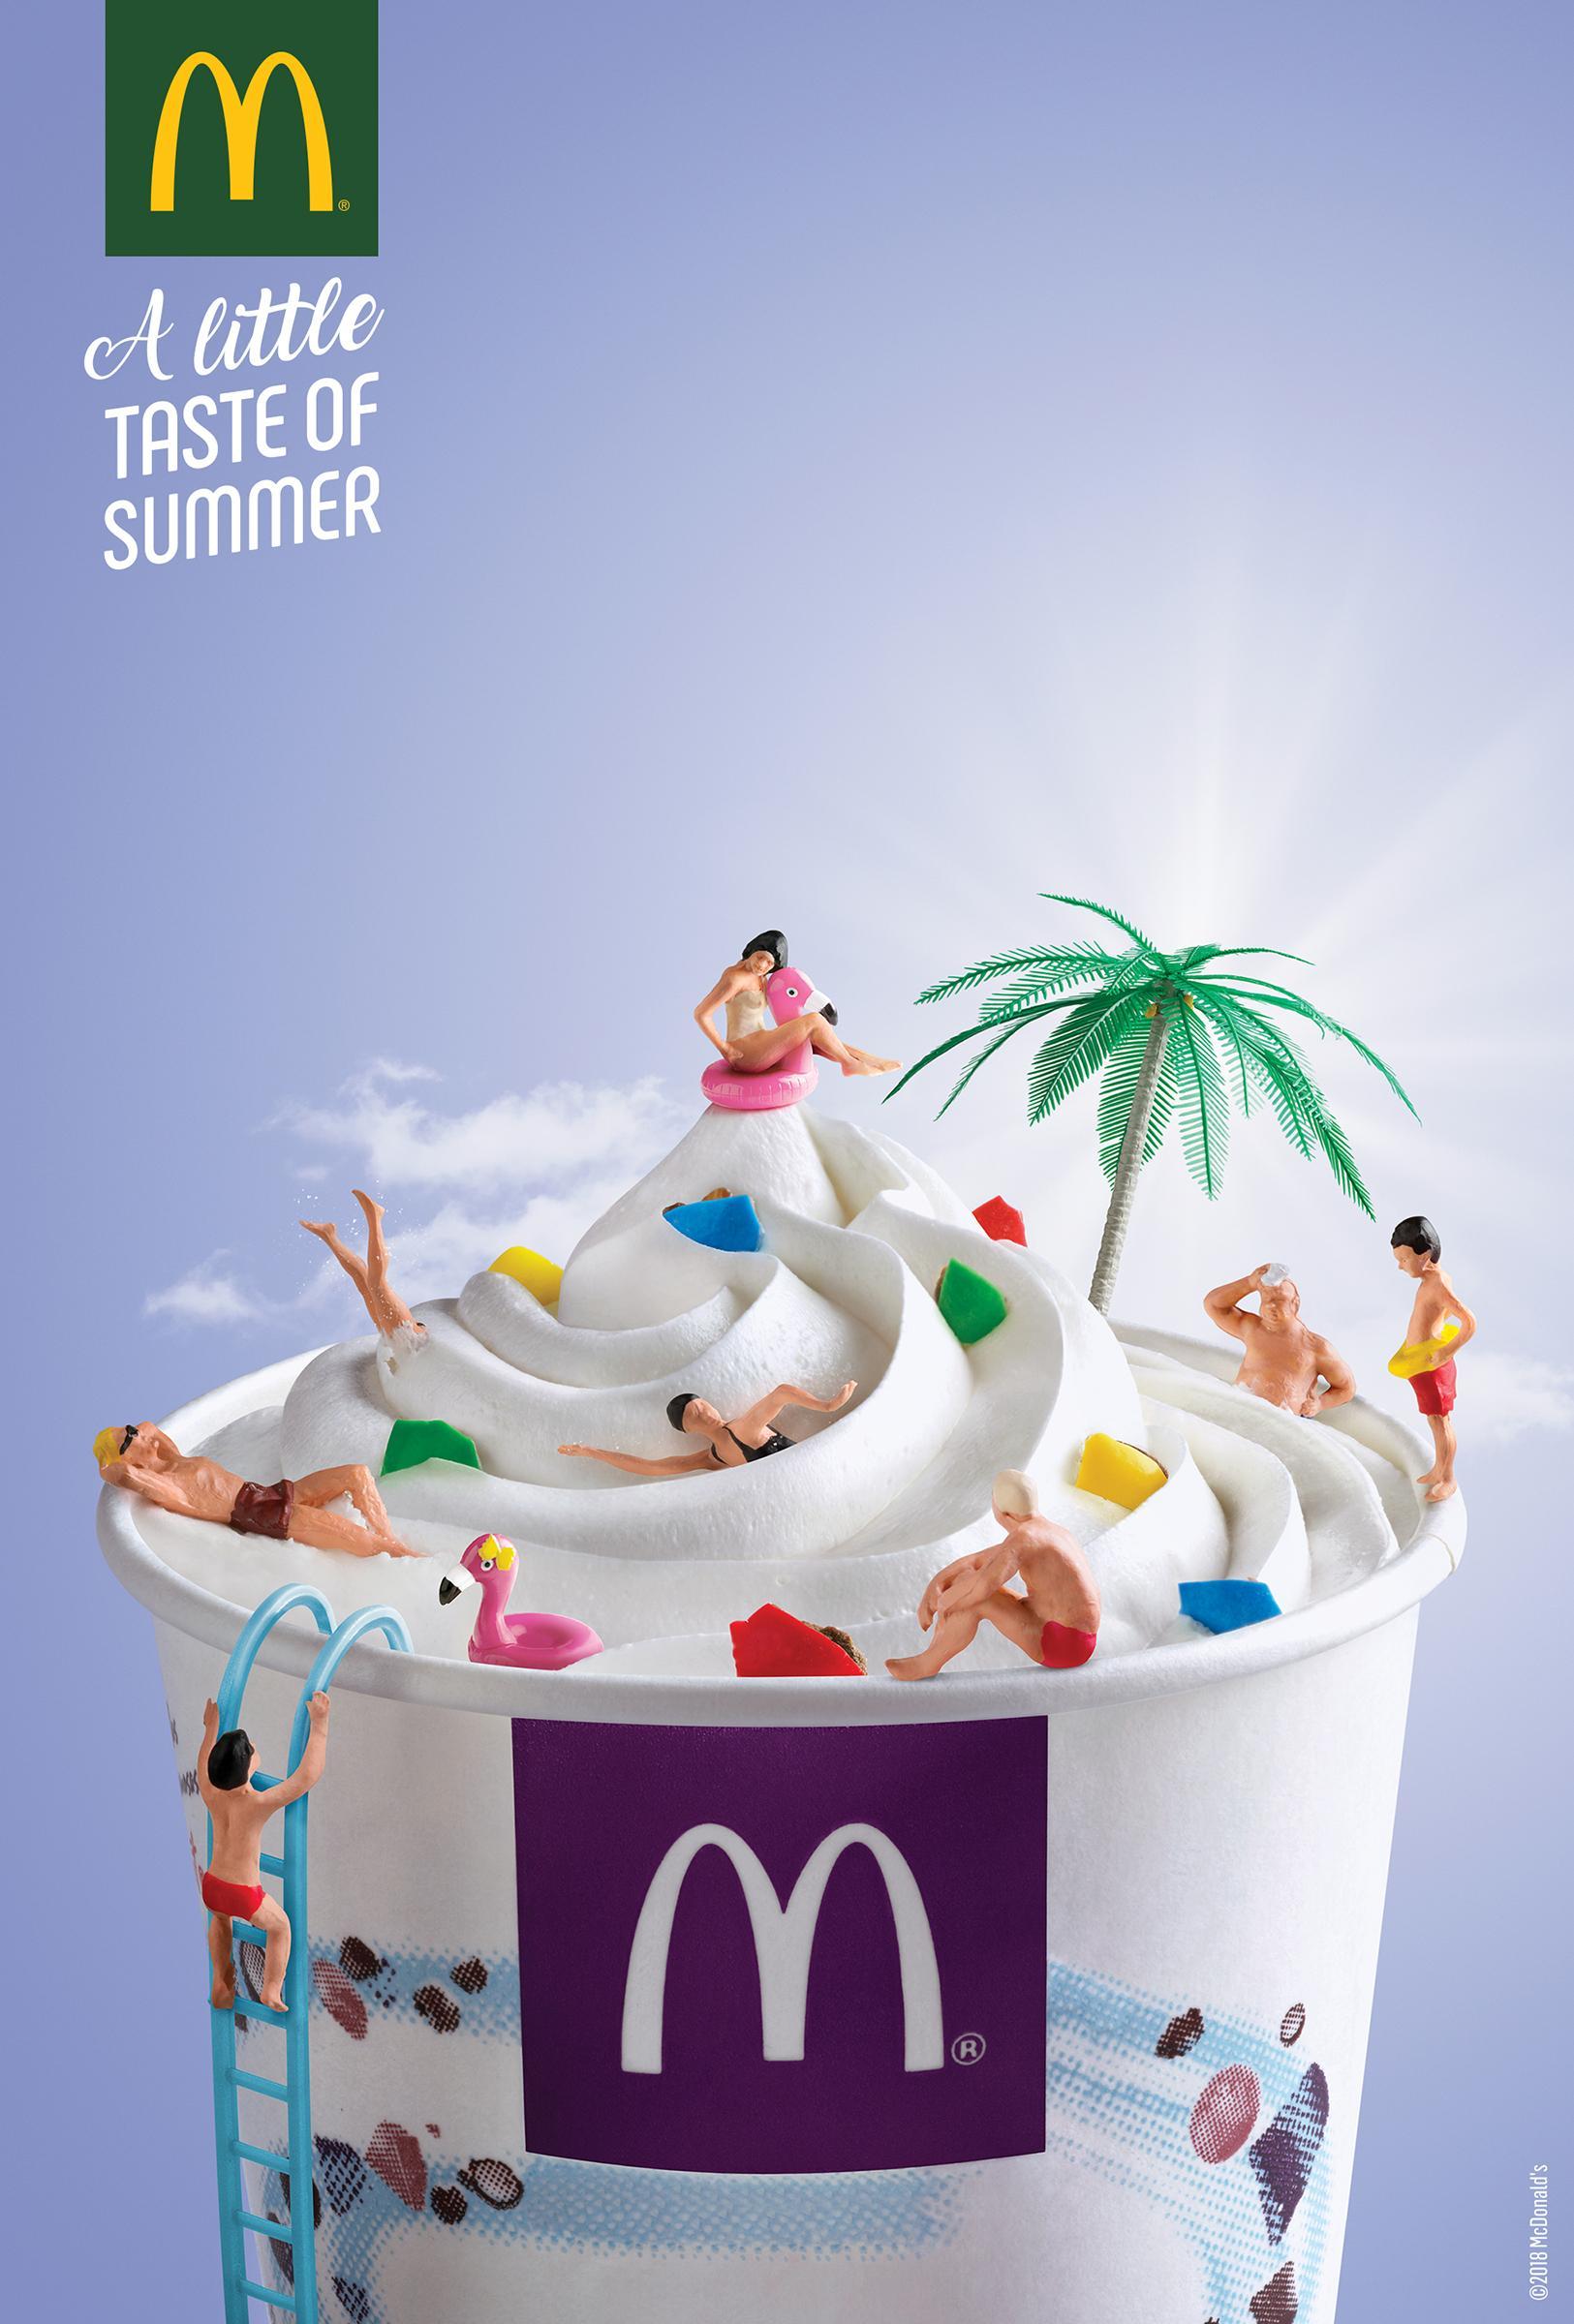 一组麦当劳平面广告欣赏:夏天的滋味.